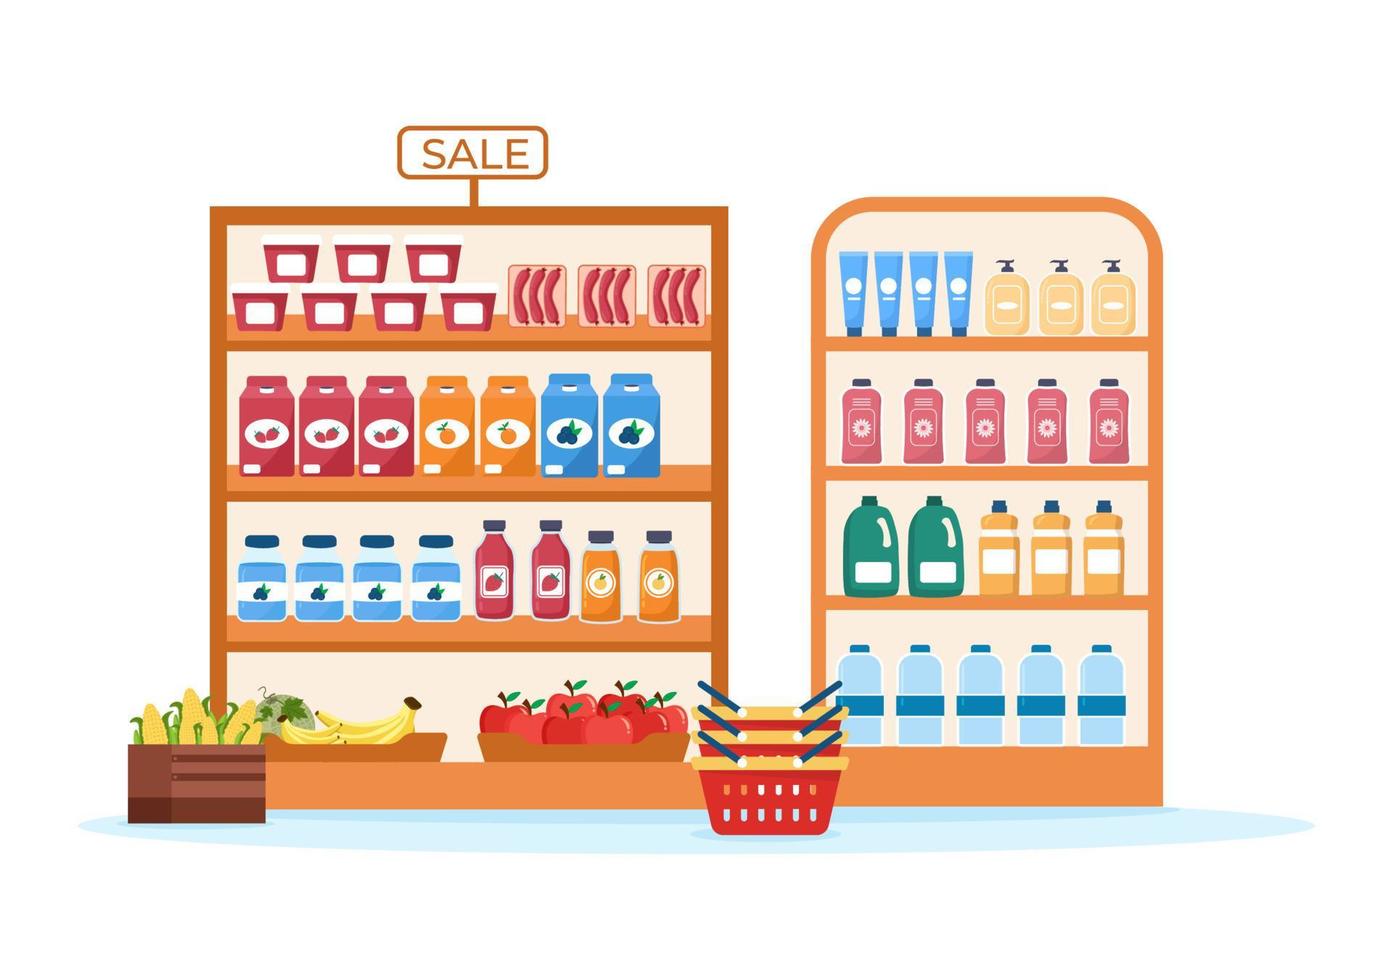 tienda de abarrotes o supermercado con estantes de productos alimenticios, estantes lácteos, frutas y bebidas para comprar en dibujos animados planos dibujados a mano ilustración de plantillas vector